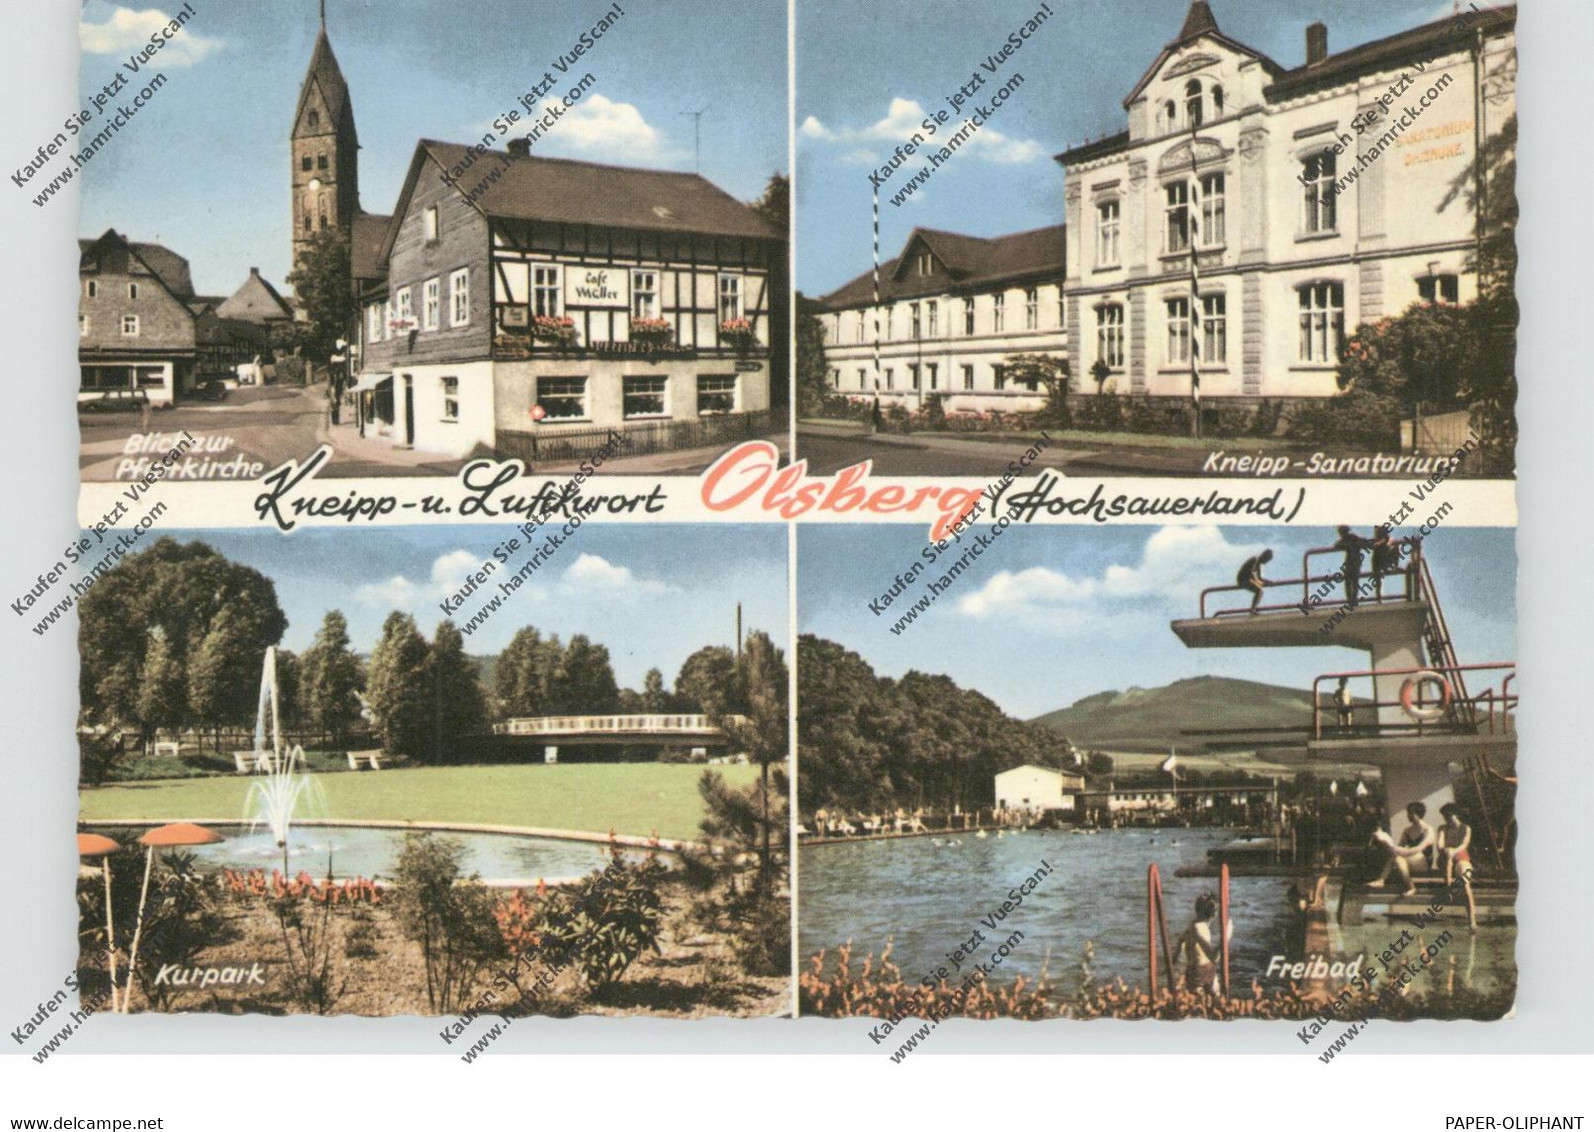 5787 OLSBERG, Freibad, Kurpark, Sanatorium, Pfarrkirche, 1963 - Meschede